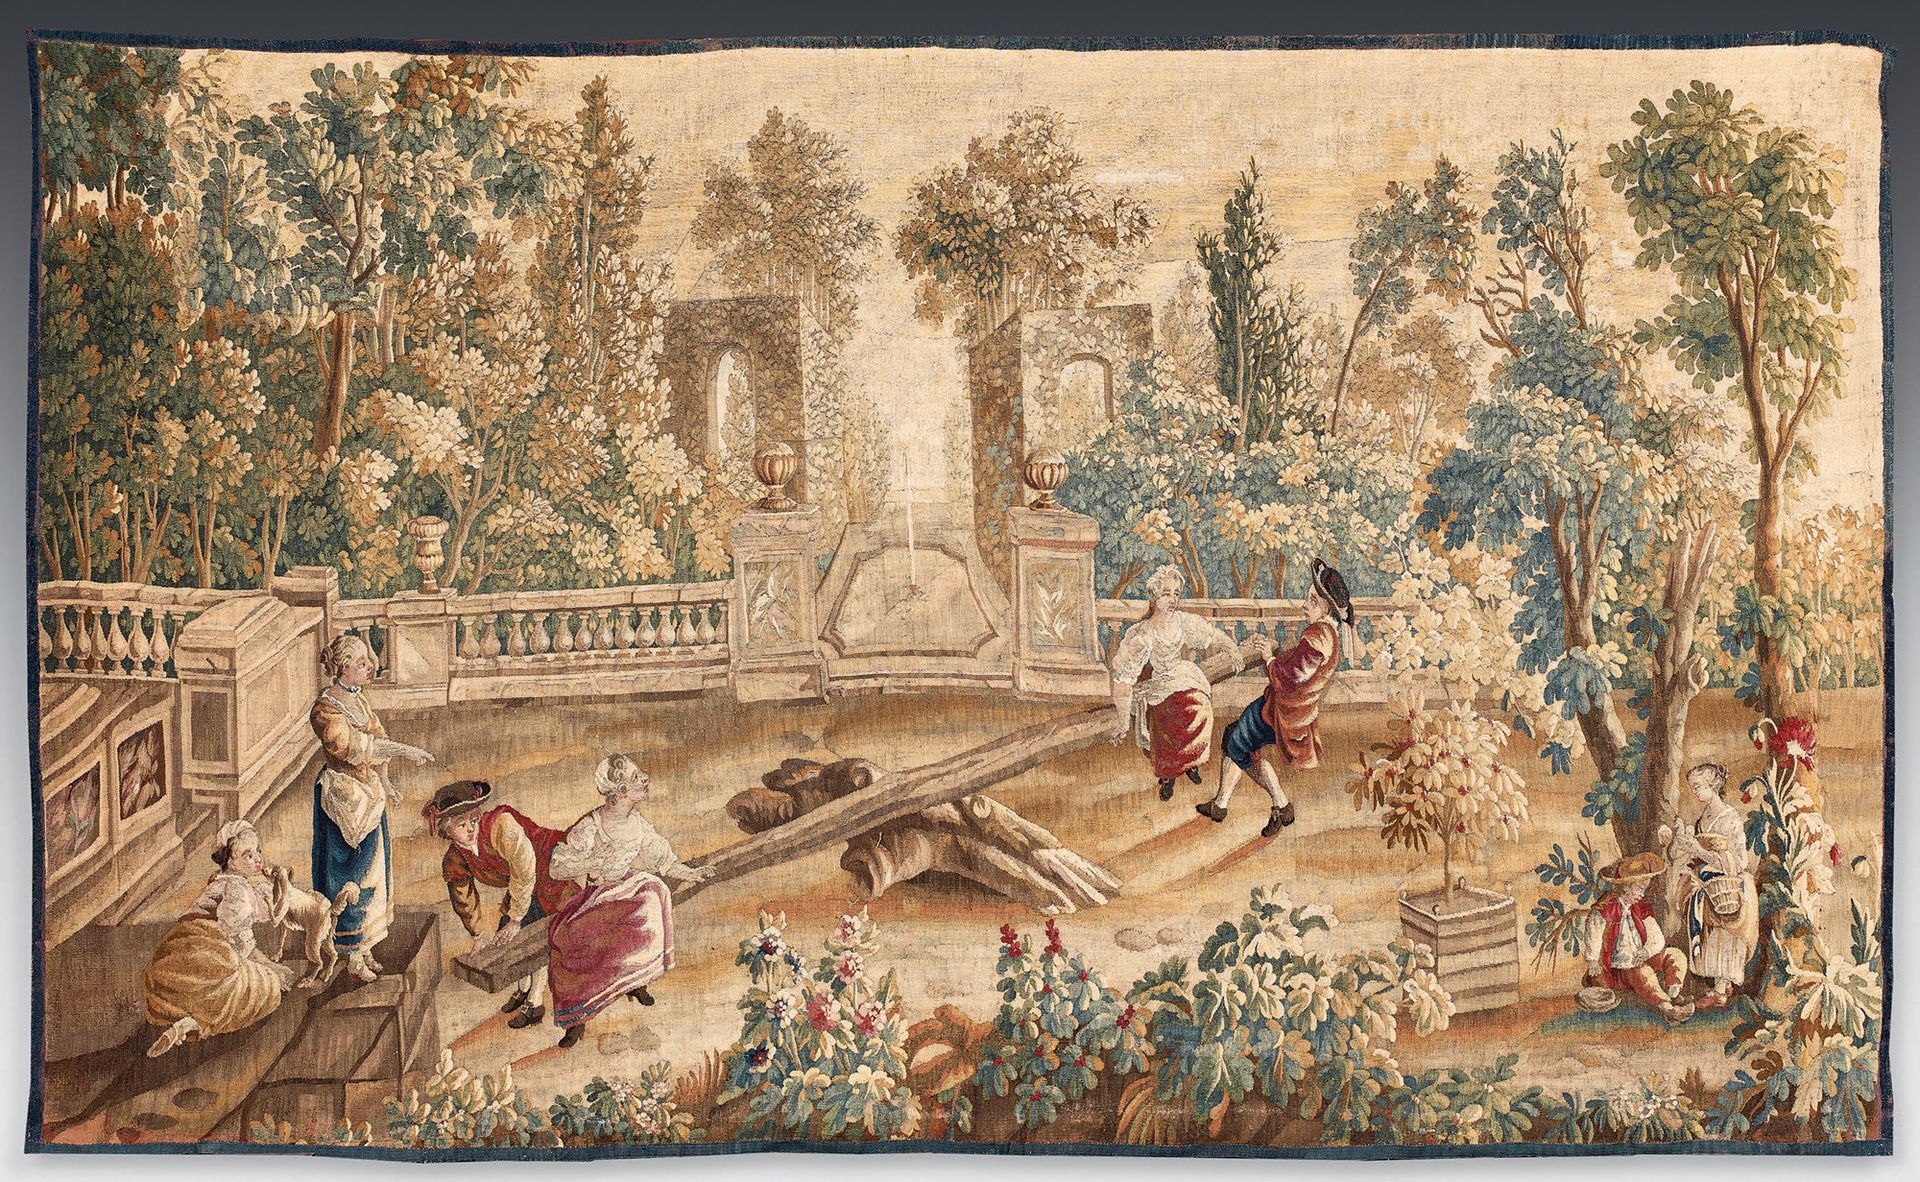 Null 儿童游戏挂毯中的 "Bascule "挂毯，奥布松皇家制造厂，根据Michel
科内耶，约1750年，18世纪中期。
这幅挂毯对应的是18世纪中期左右&hellip;